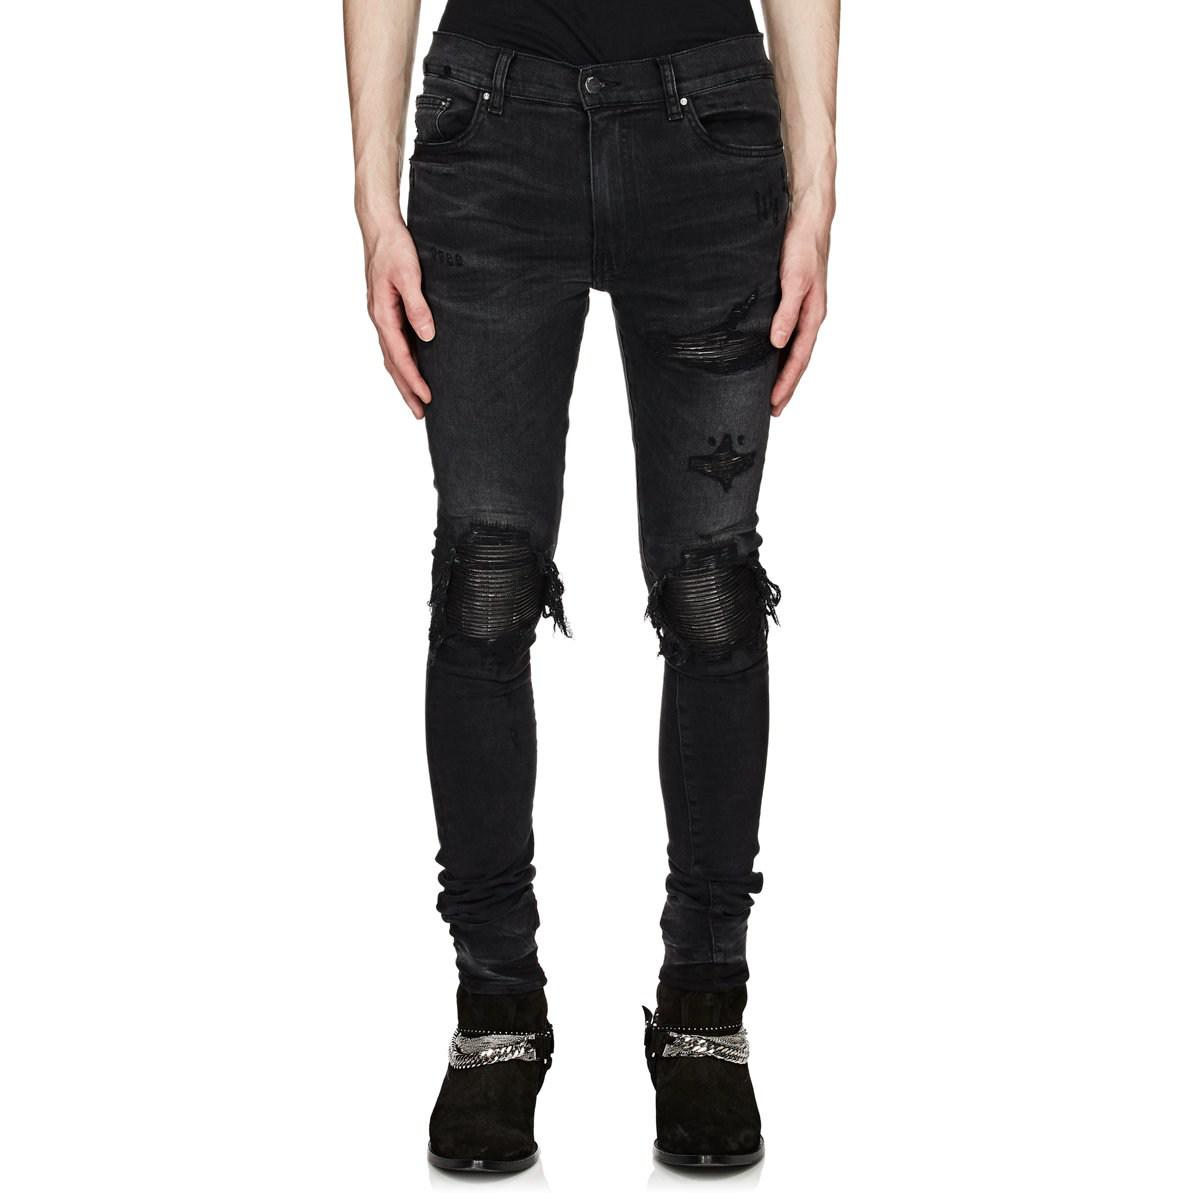 Amiri Denim Mx1 Slim Jeans in Black for Men - Lyst